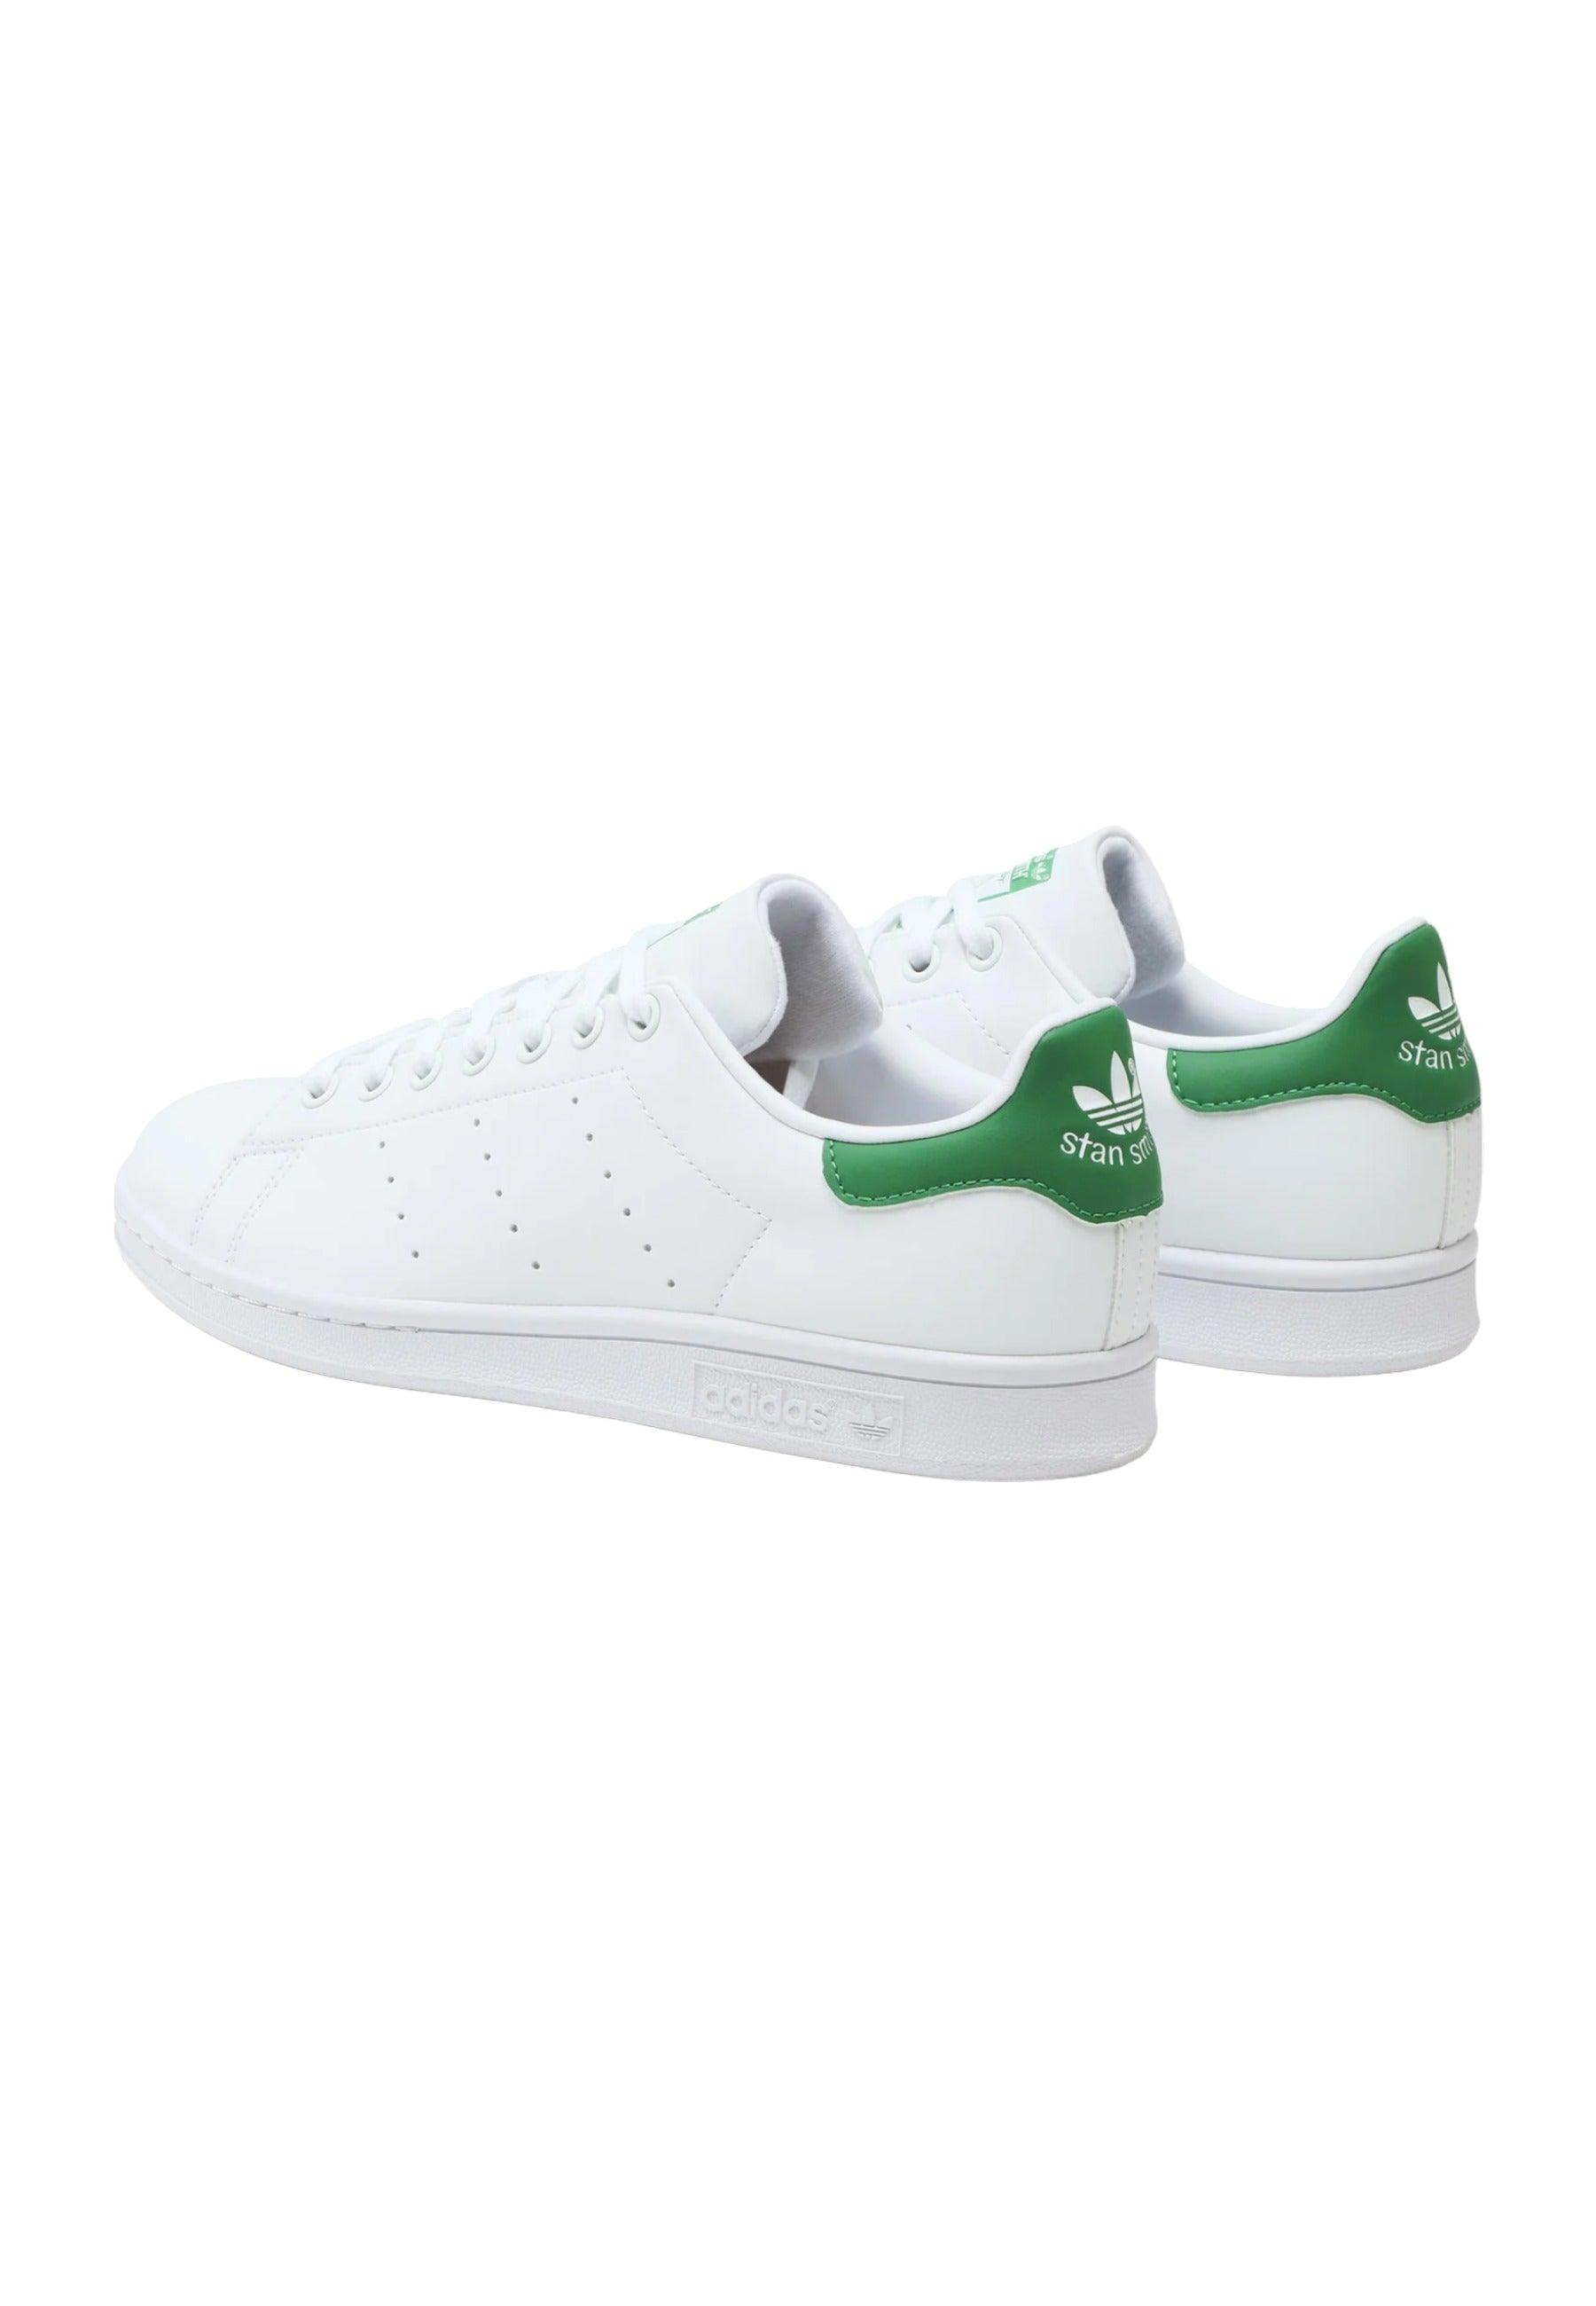 ADIDAS Stan Smith Sneaker Uomo White Green FX5502 - Sandrini Calzature e Abbigliamento